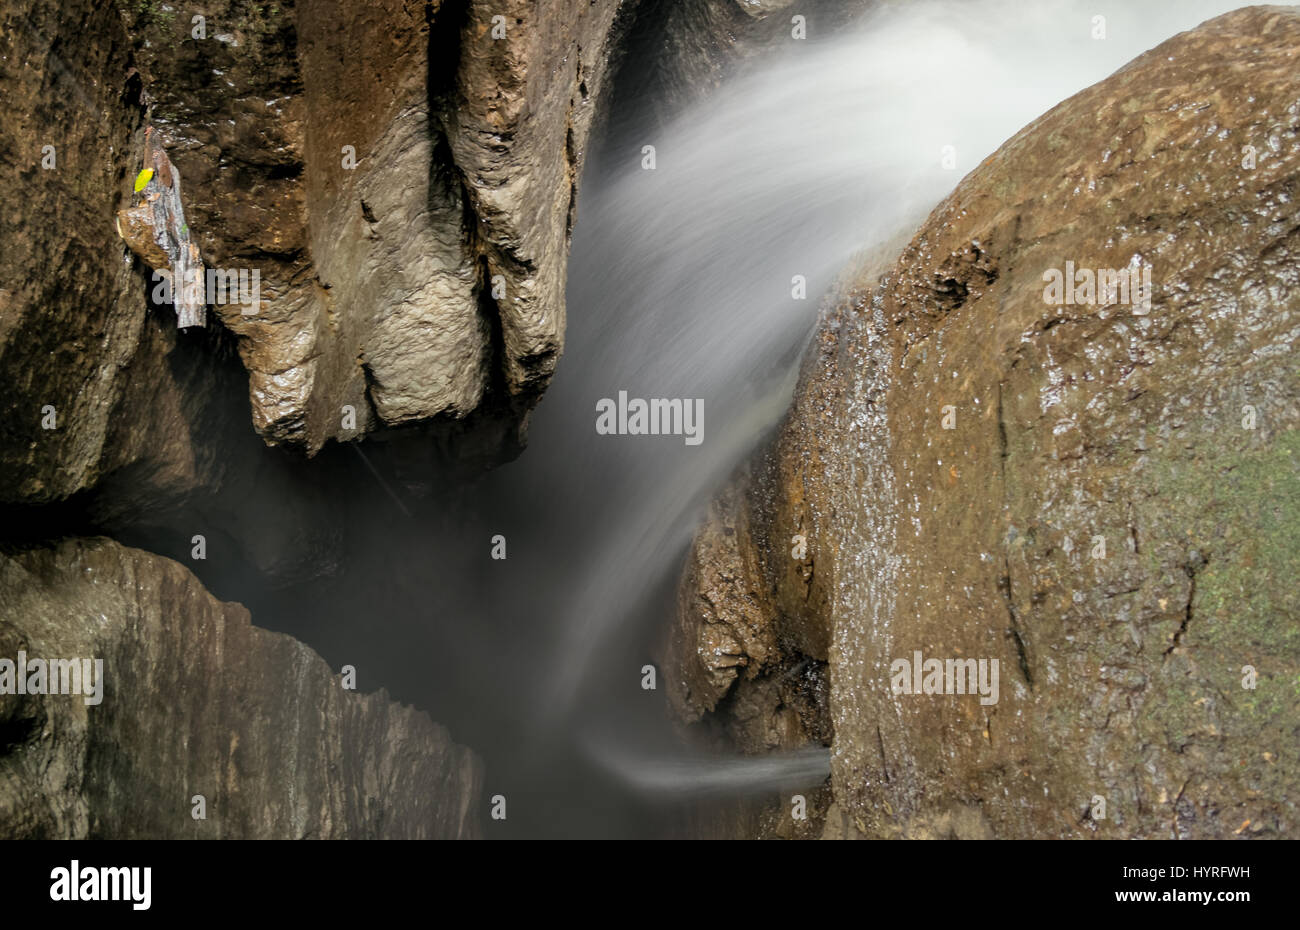 Erkunden Sie den faszinierenden Eingangsschacht des ecuadorianischen Mayei Cave Waterfall, ein faszinierendes Naturwunder, das Sie in Staunen versetzen wird. Stockfoto